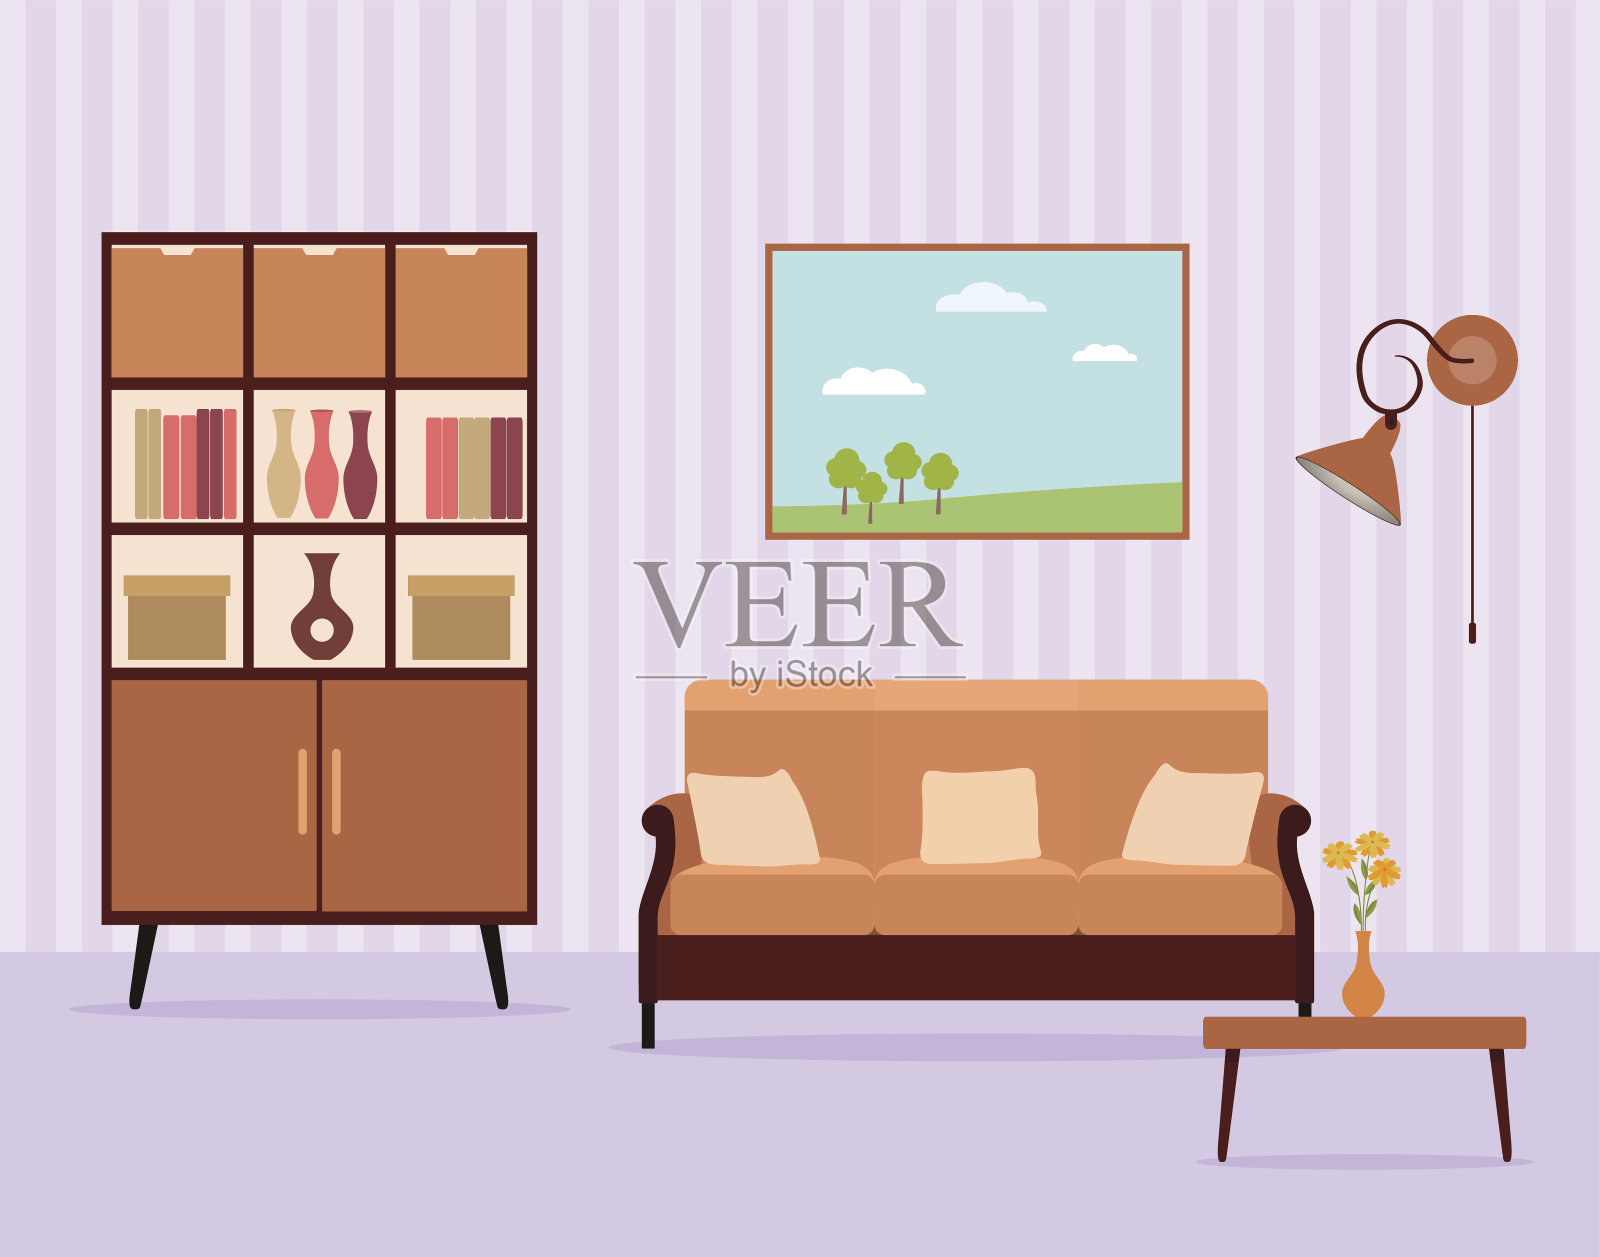 平面风格的客厅室内设计包括家具、橱柜、沙发、桌子、台灯和风景画。插画图片素材